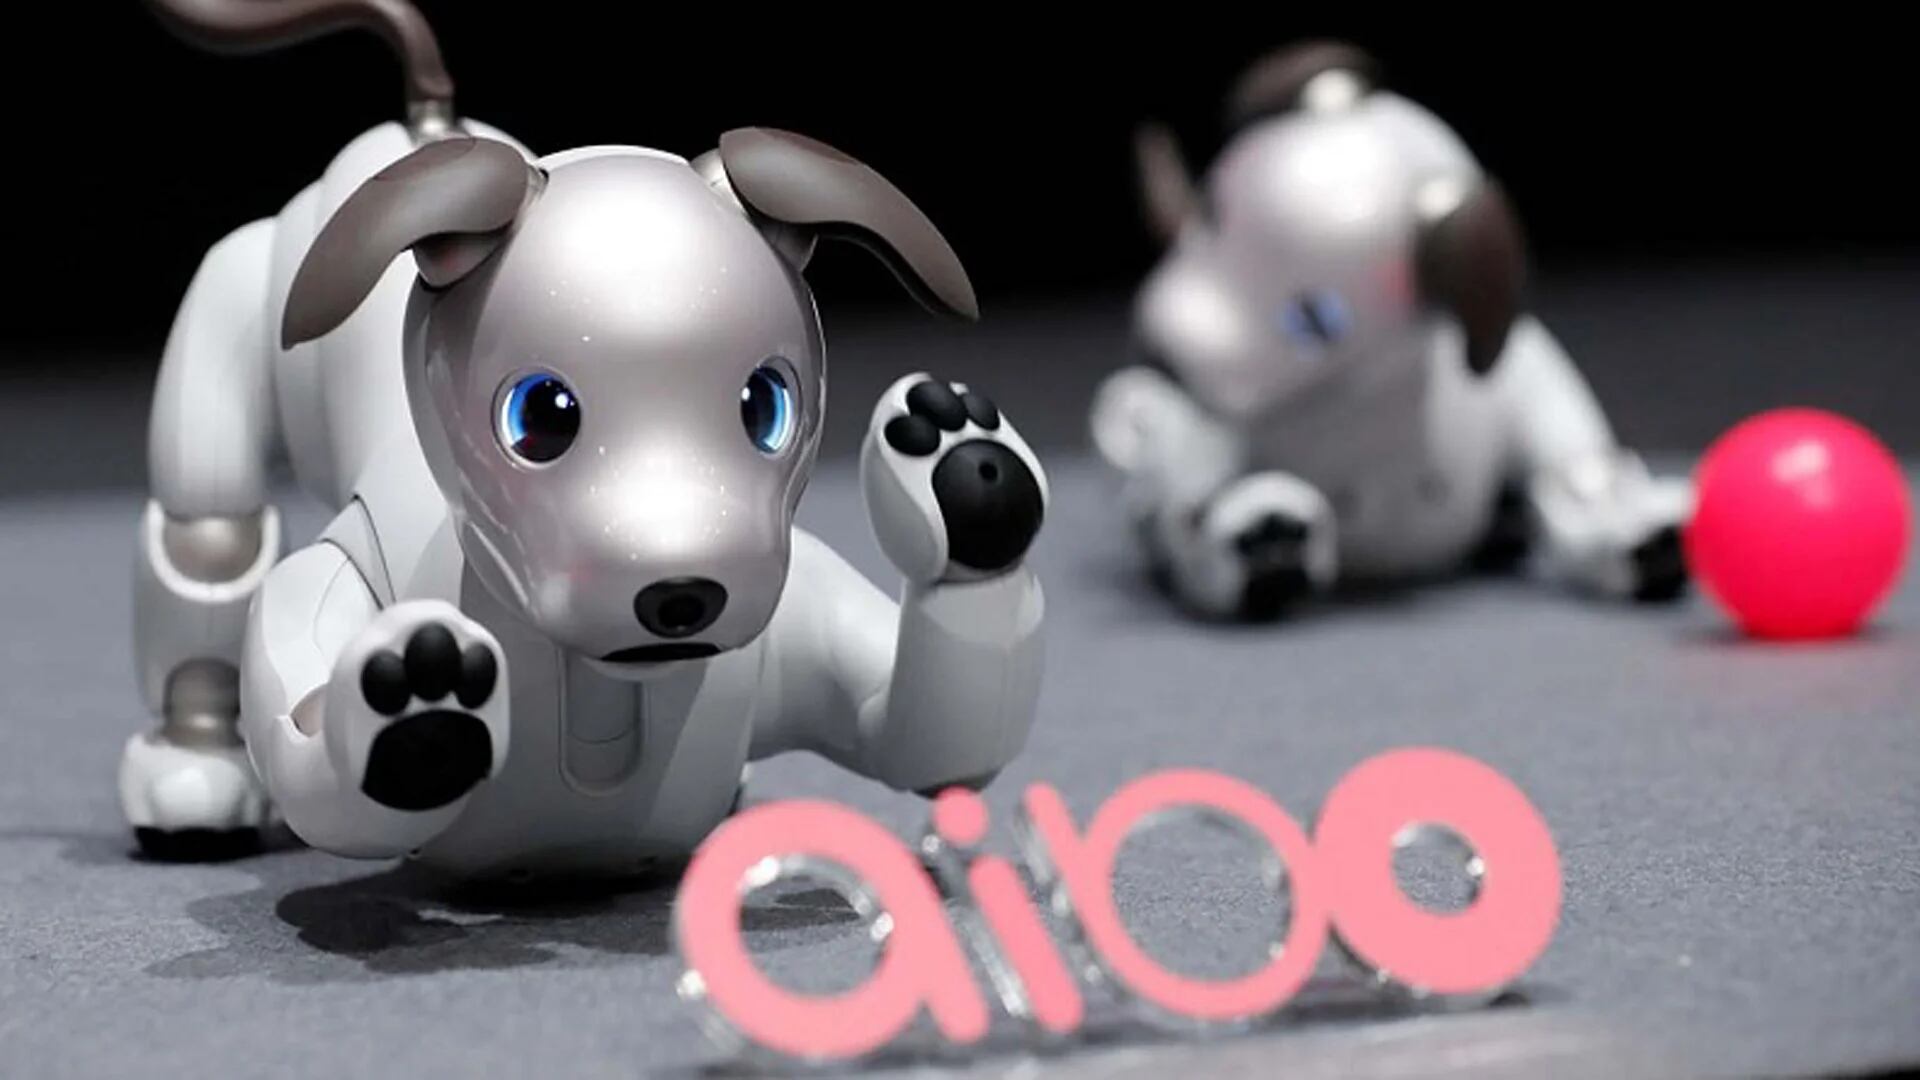 Su nombre es Aibo y se trata de una mascota robot especialmente diseñada para interactuar con los seres humanos, “casi” como un perro real.  (Sony)